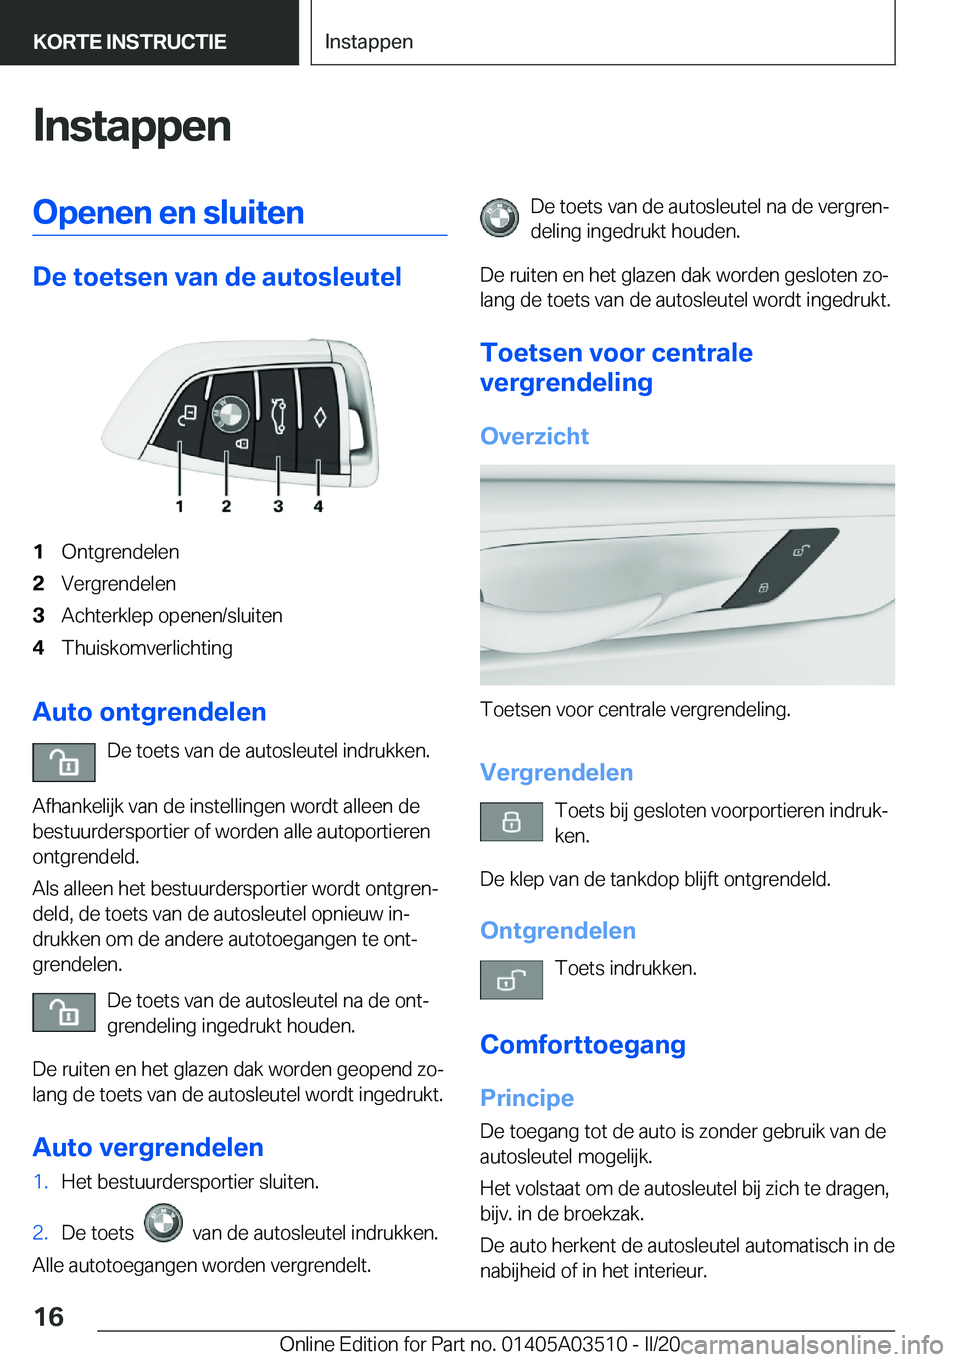 BMW X3 2020  Instructieboekjes (in Dutch) �I�n�s�t�a�p�p�e�n�O�p�e�n�e�n��e�n��s�l�u�i�t�e�n
�D�e��t�o�e�t�s�e�n��v�a�n��d�e��a�u�t�o�s�l�e�u�t�e�l
�1�O�n�t�g�r�e�n�d�e�l�e�n�2�V�e�r�g�r�e�n�d�e�l�e�n�3�A�c�h�t�e�r�k�l�e�p��o�p�e�n�e�n